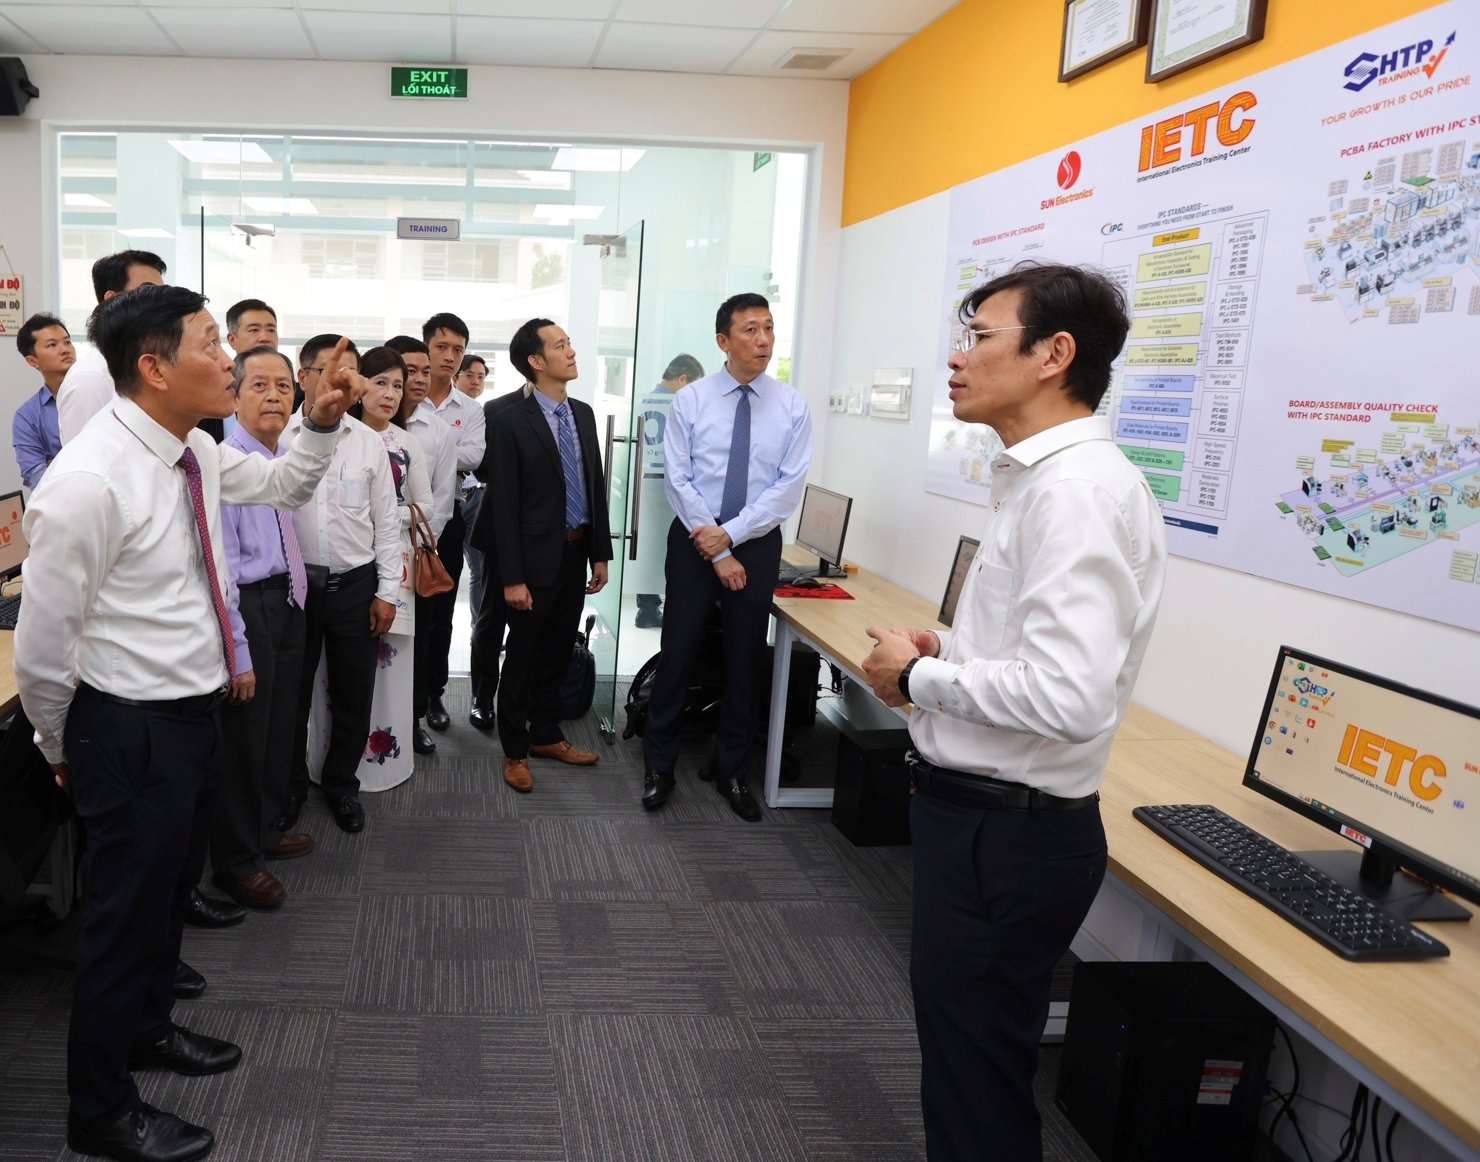 代表们参观胡志明市高科技园区的电路设计培训中心。